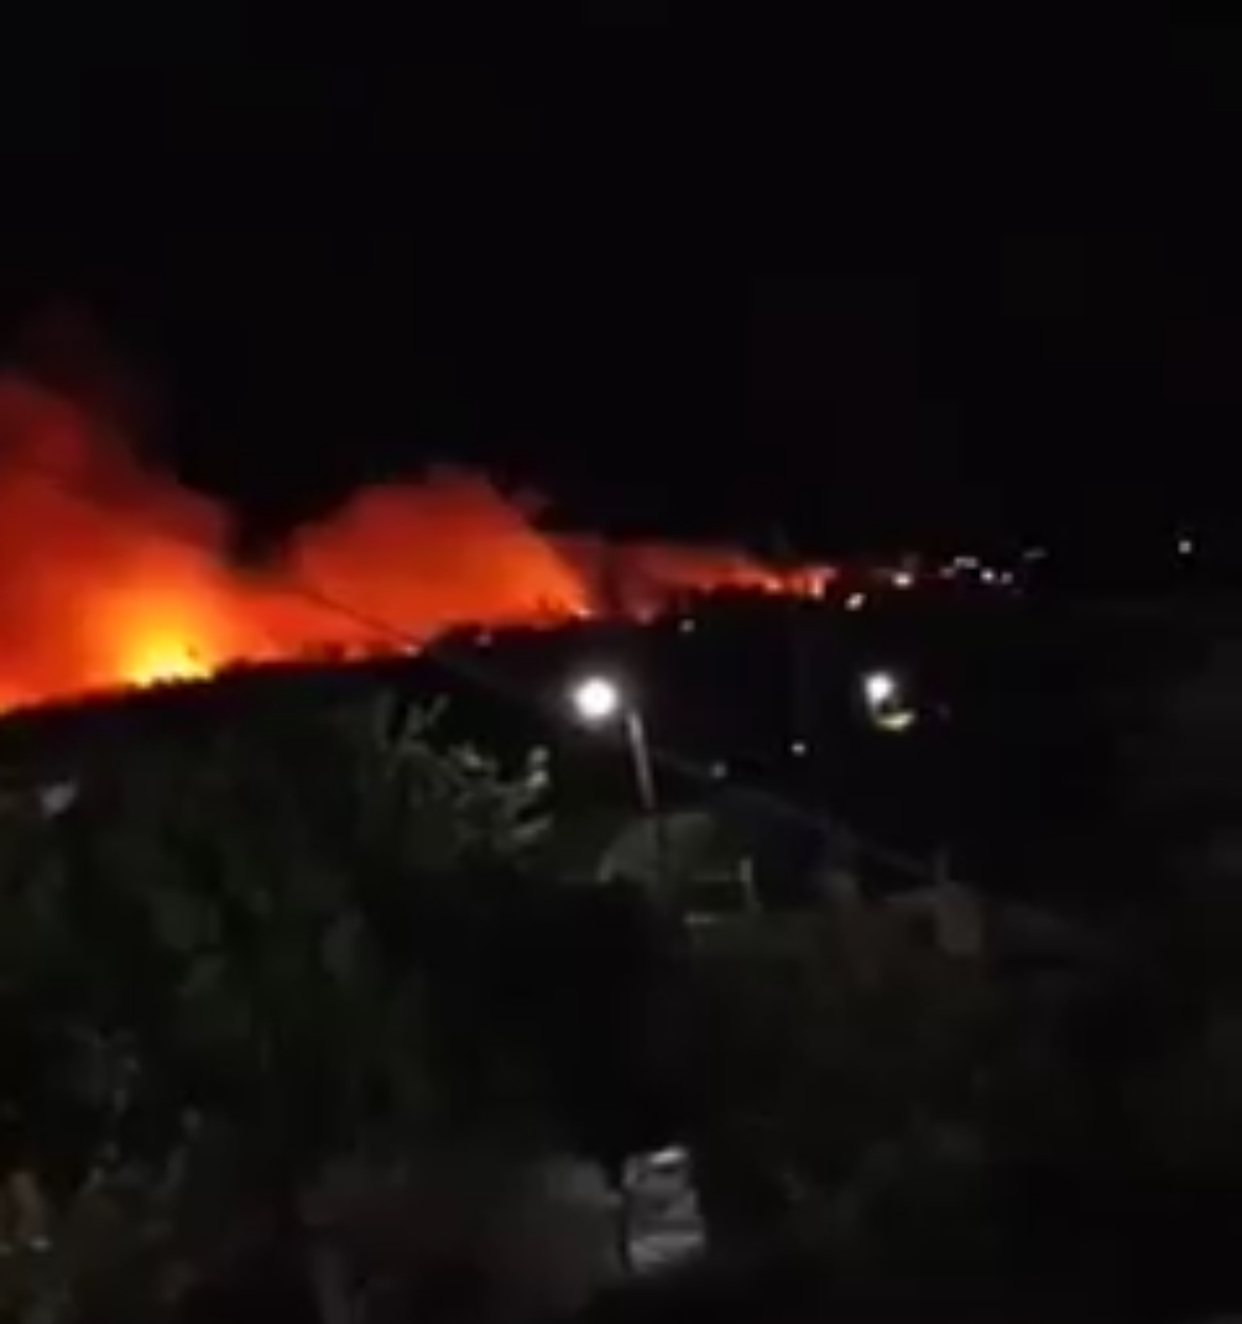 Μεγάλη φωτιά στο Λουτράκι -Κοντά σε οικισμό στον Σχίνο, απειλούνται σπίτια [βίντεο]